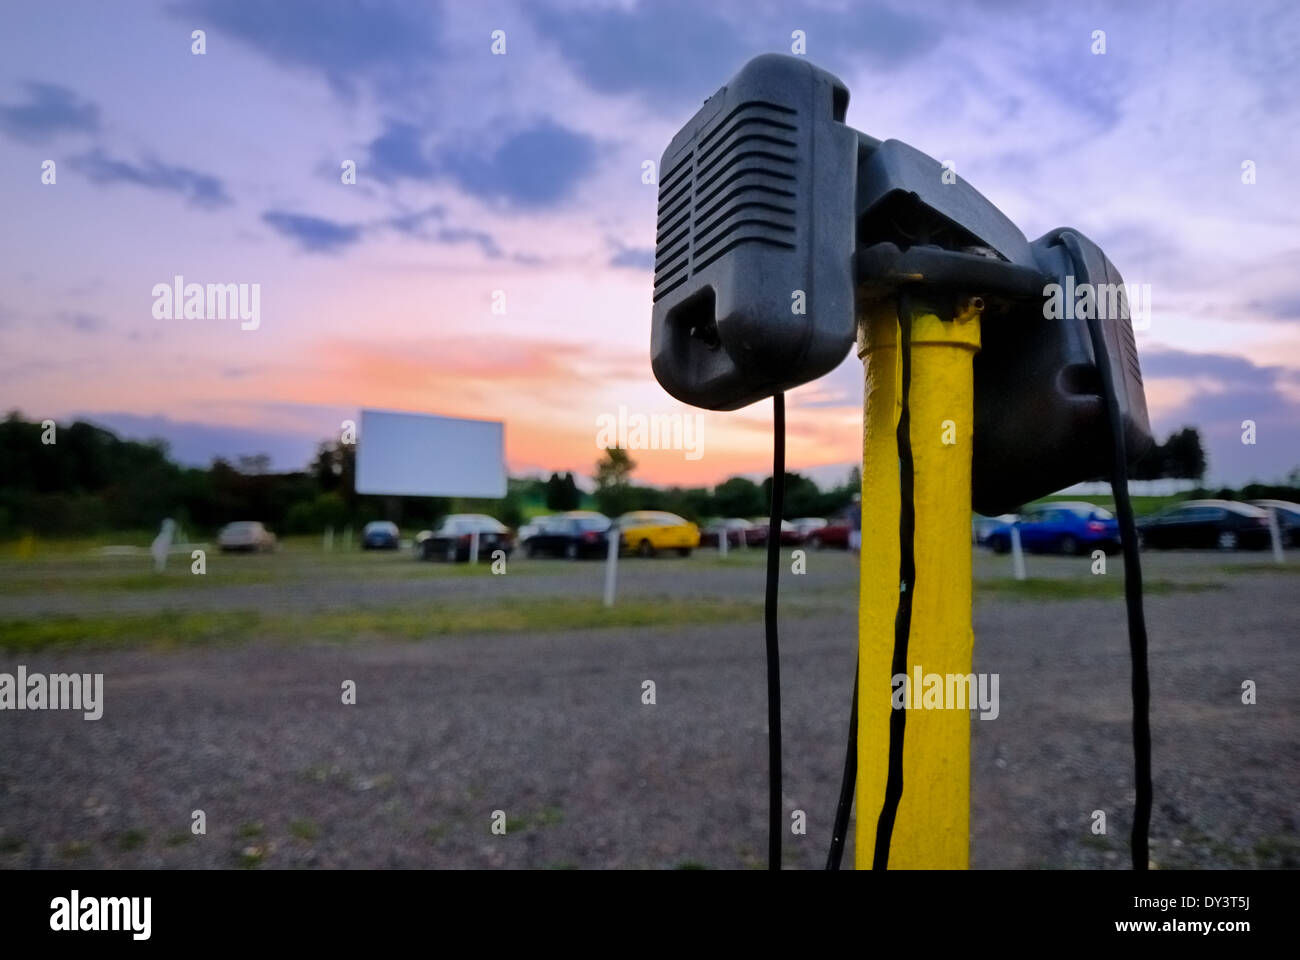 Auto-Lautsprecher im Vordergrund in diesem Bild, aufgenommen in der Abenddämmerung am zuverlässig fahren In gefunden Moon Township, Pennsylvania. Stockfoto